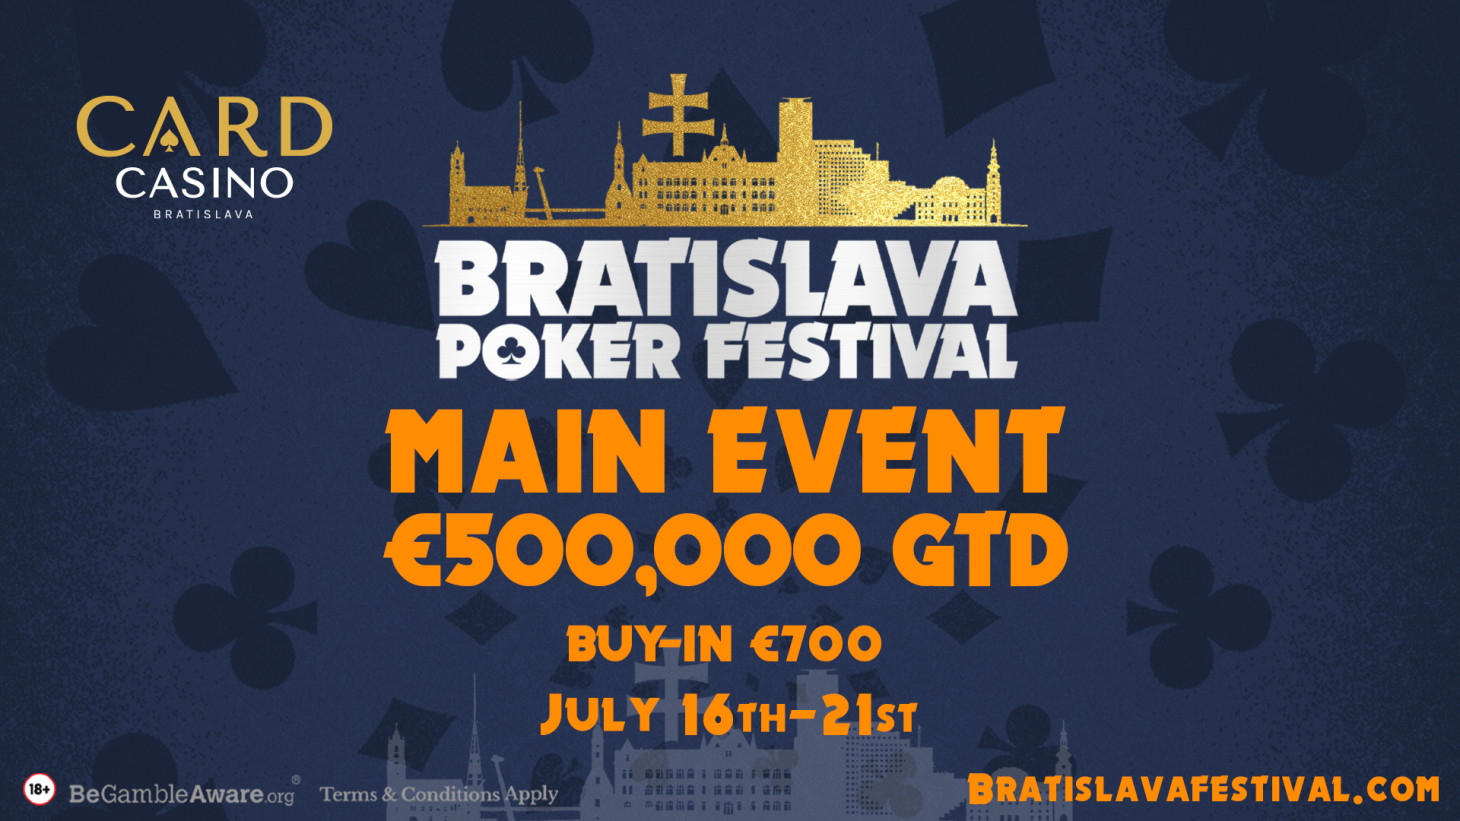 V júli sa rozohrá Bratislava Poker Festival s Mainom 500.000€ GTD!